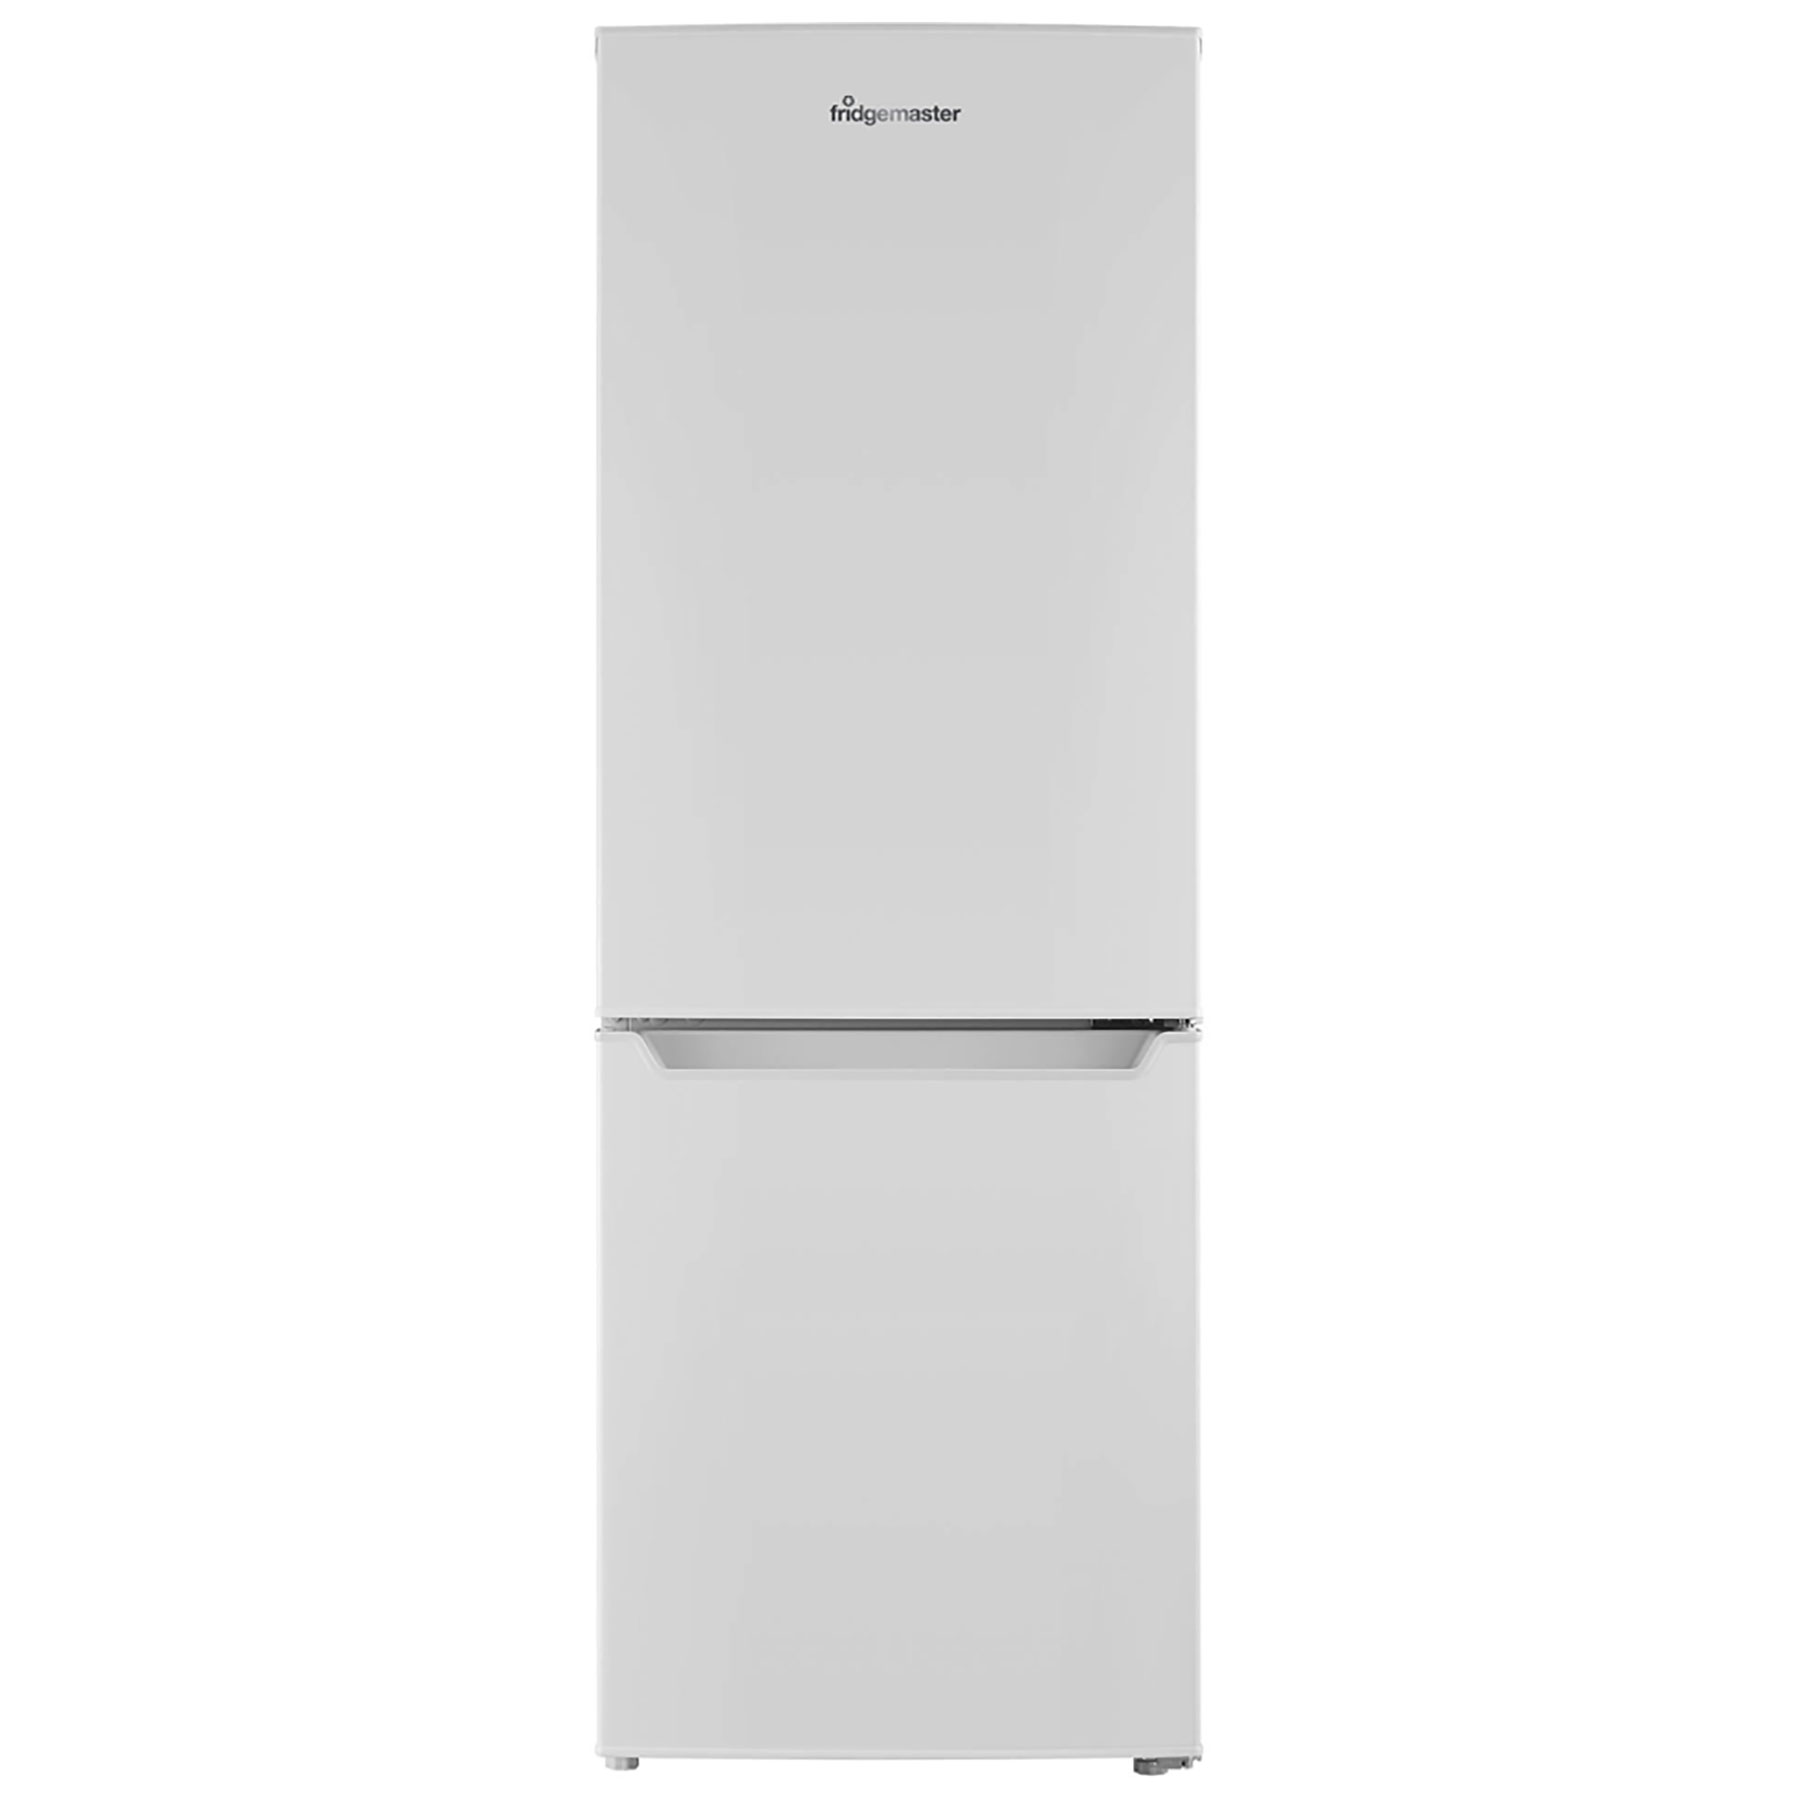 Image of Fridgemaster MC50165AF 50cm Fridge Freezer in White 1 43m F Rated 122